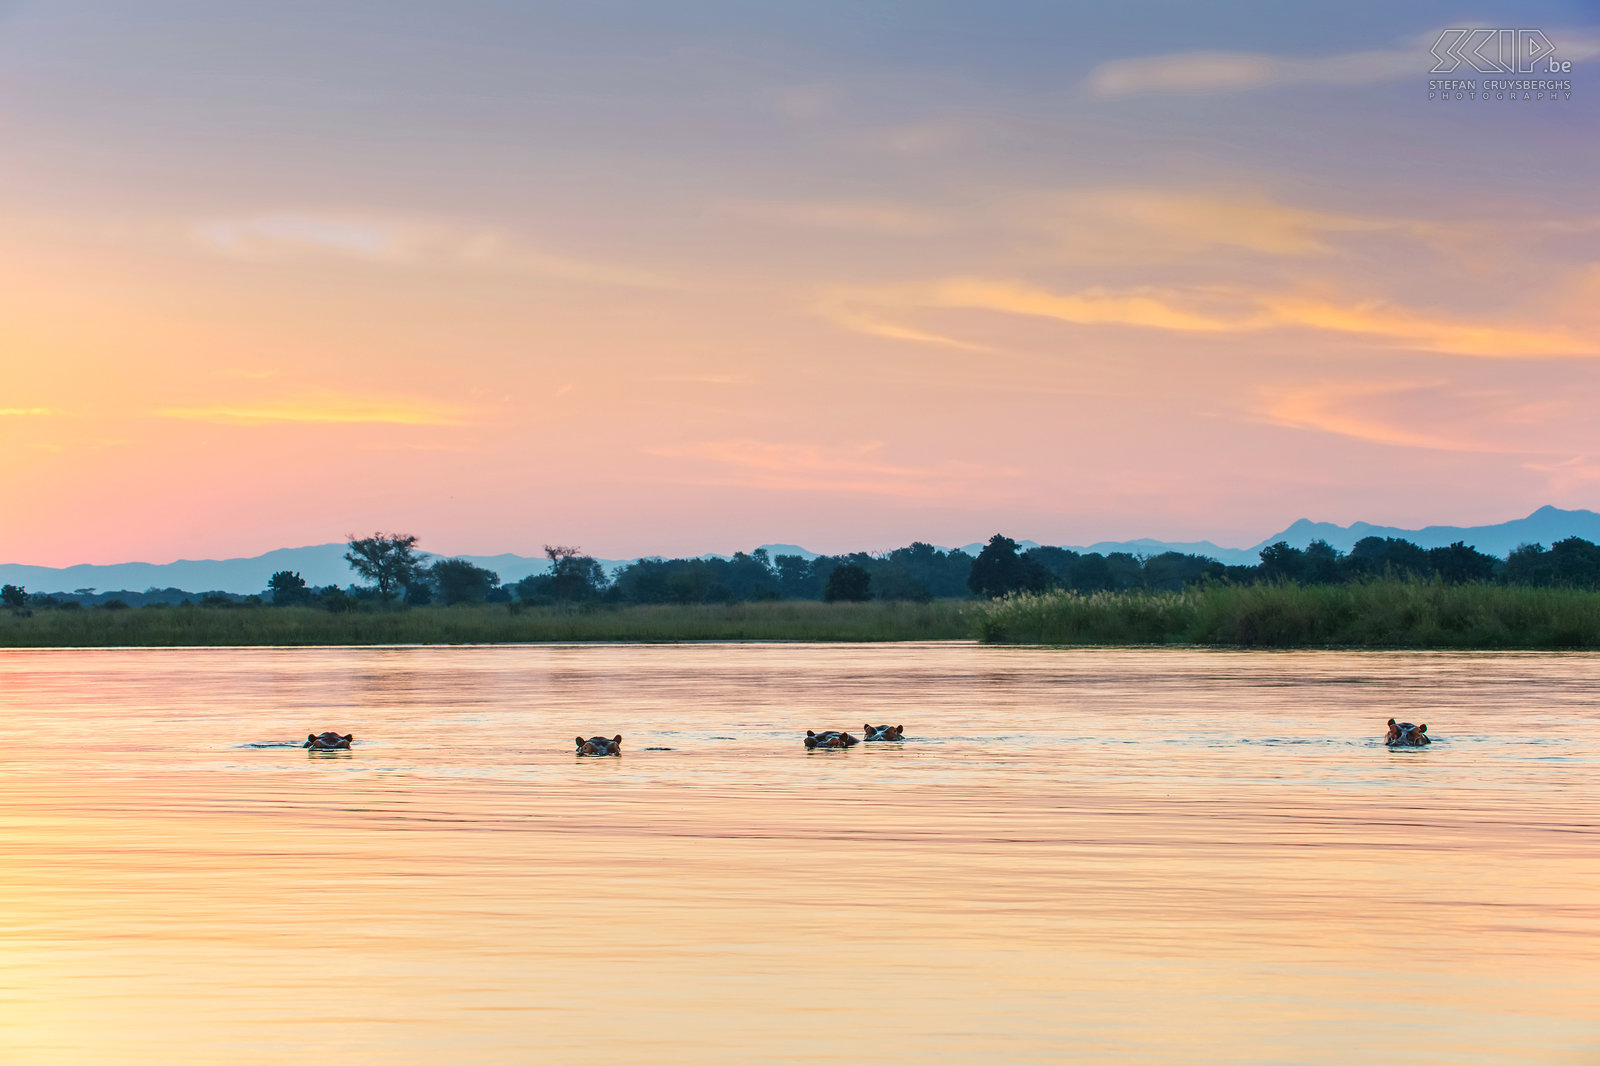 Lower Zambezi - Nijlpaarden bij zonsondergang De Zambezi rivier heeft de hoogste dichtheid van de nijlpaarden en krokodillen: 33 nijlpaarden en zes volwassen krokodillen per kilometer. Overal kan je groepen nijlpaarden vinden. Het zijn vegetarische dieren en grazen vooral ‘s nachts. Het nijlpaard brengt het grootste deel van de dag door in of vlak bij het water. Stefan Cruysberghs